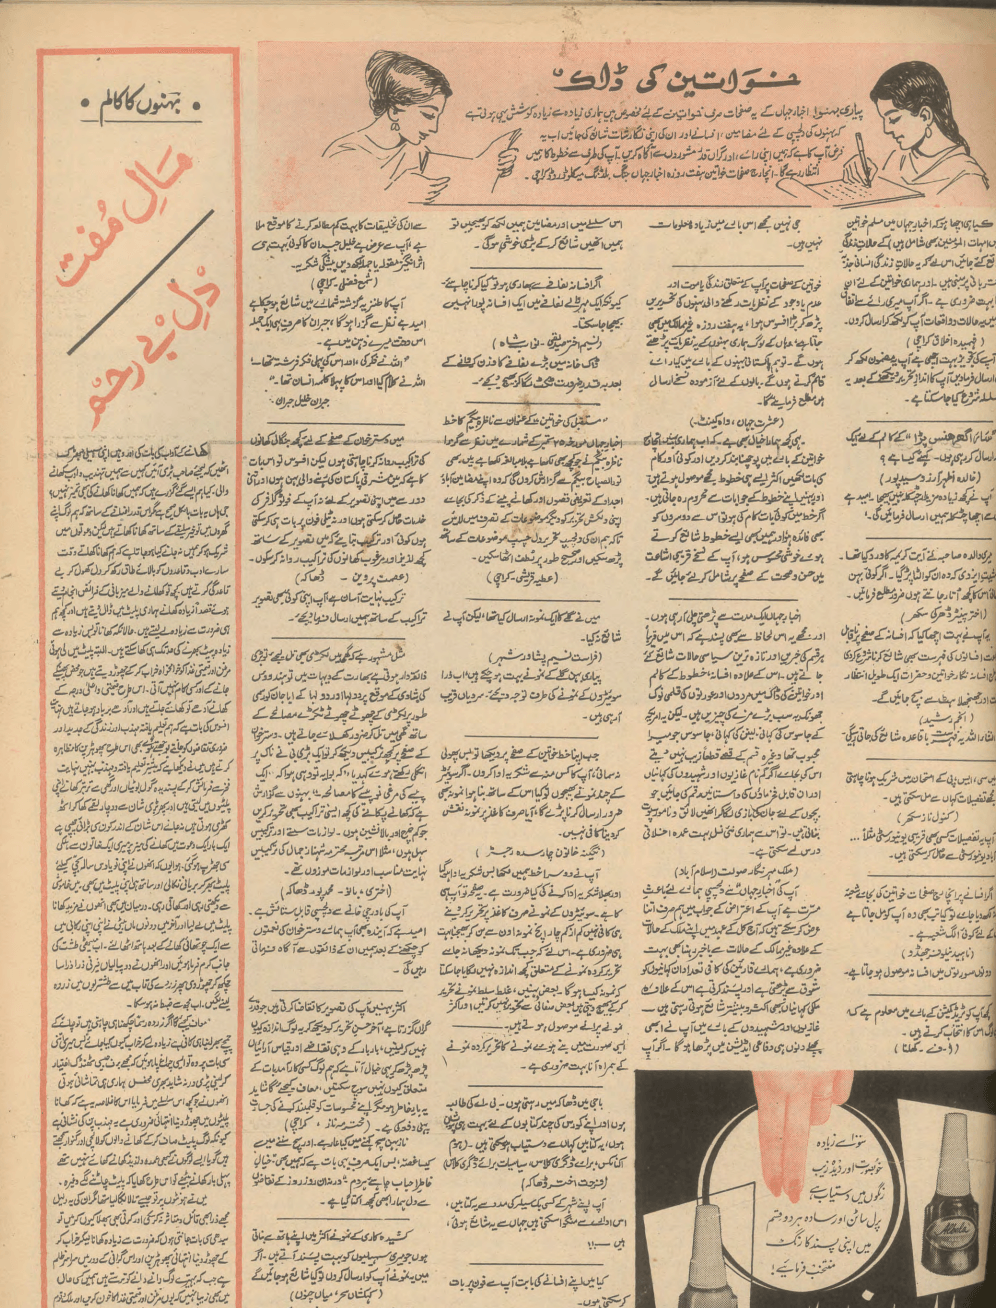 Akhbar-e-Jahan (Oct 7, 1968) - KHAJISTAN™